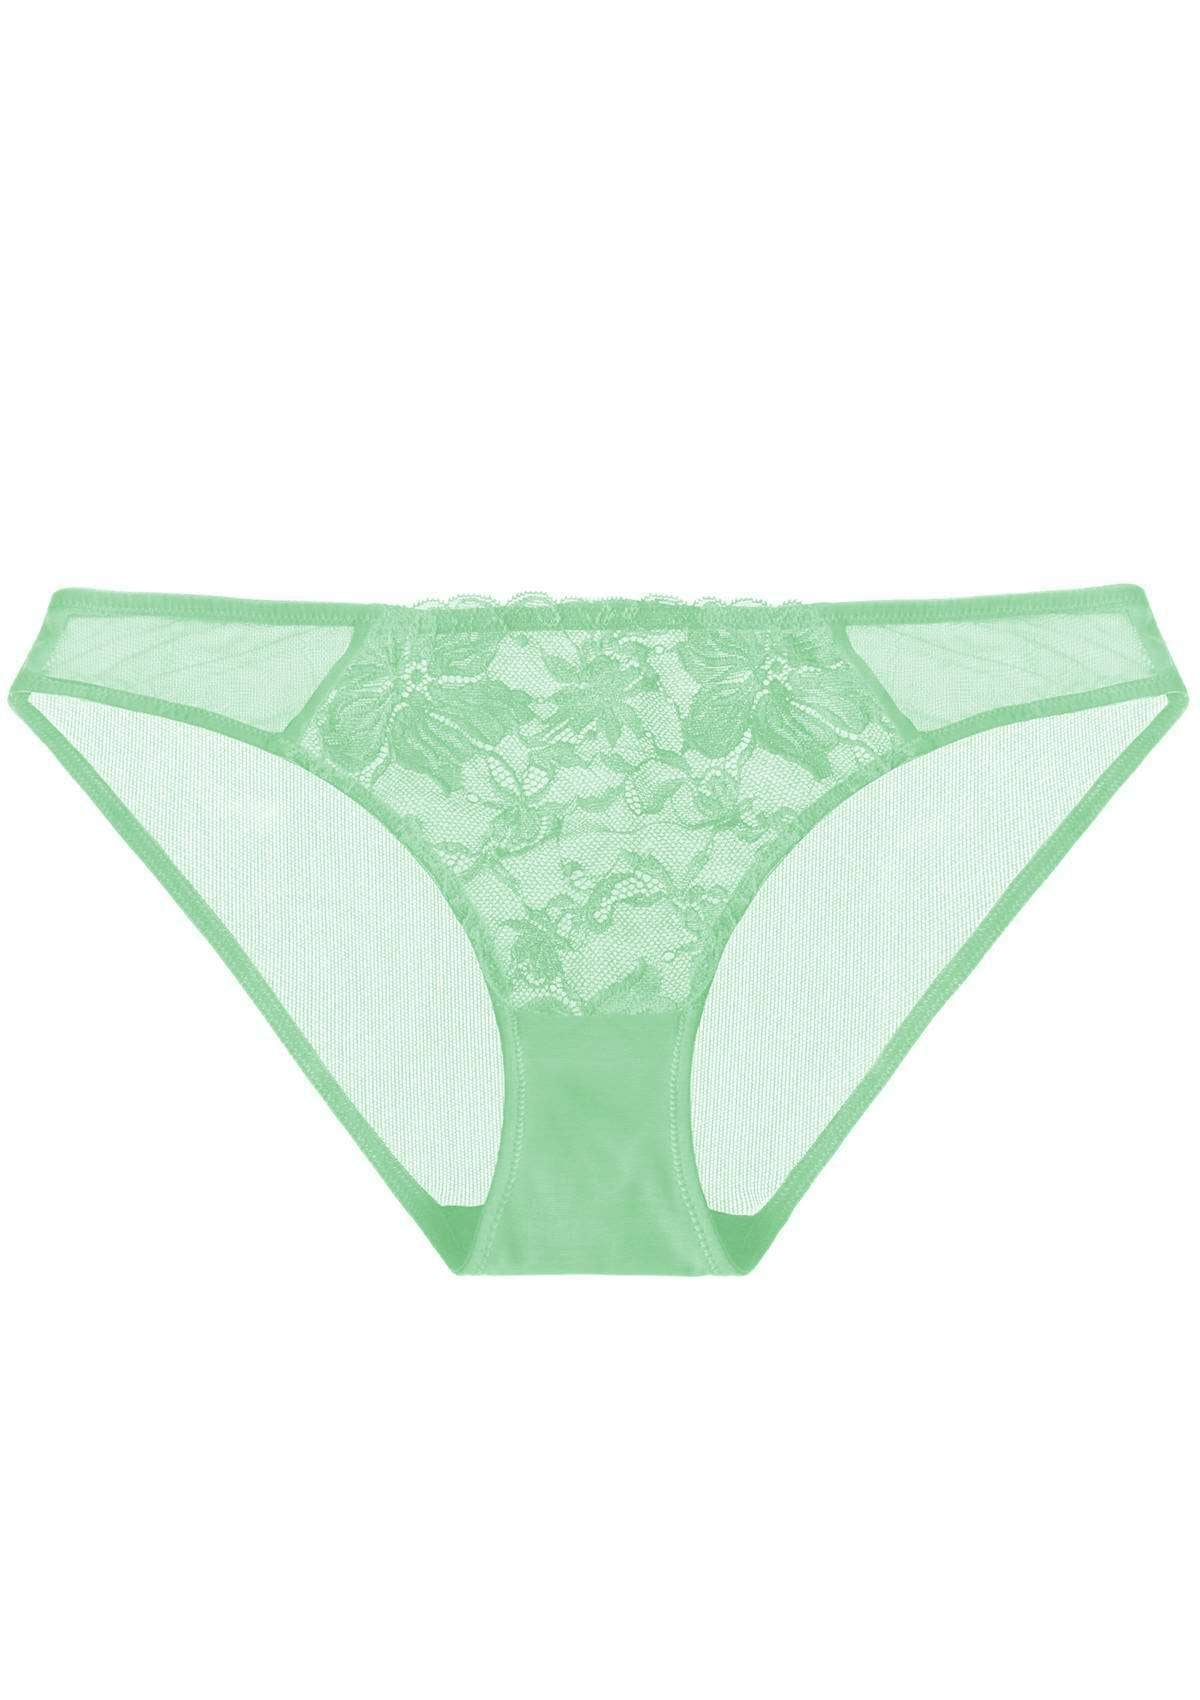 HSIA Pretty In Petals Mid-Rise Sexy Stylish Lace MESH Underwear  - XL / Bright Green